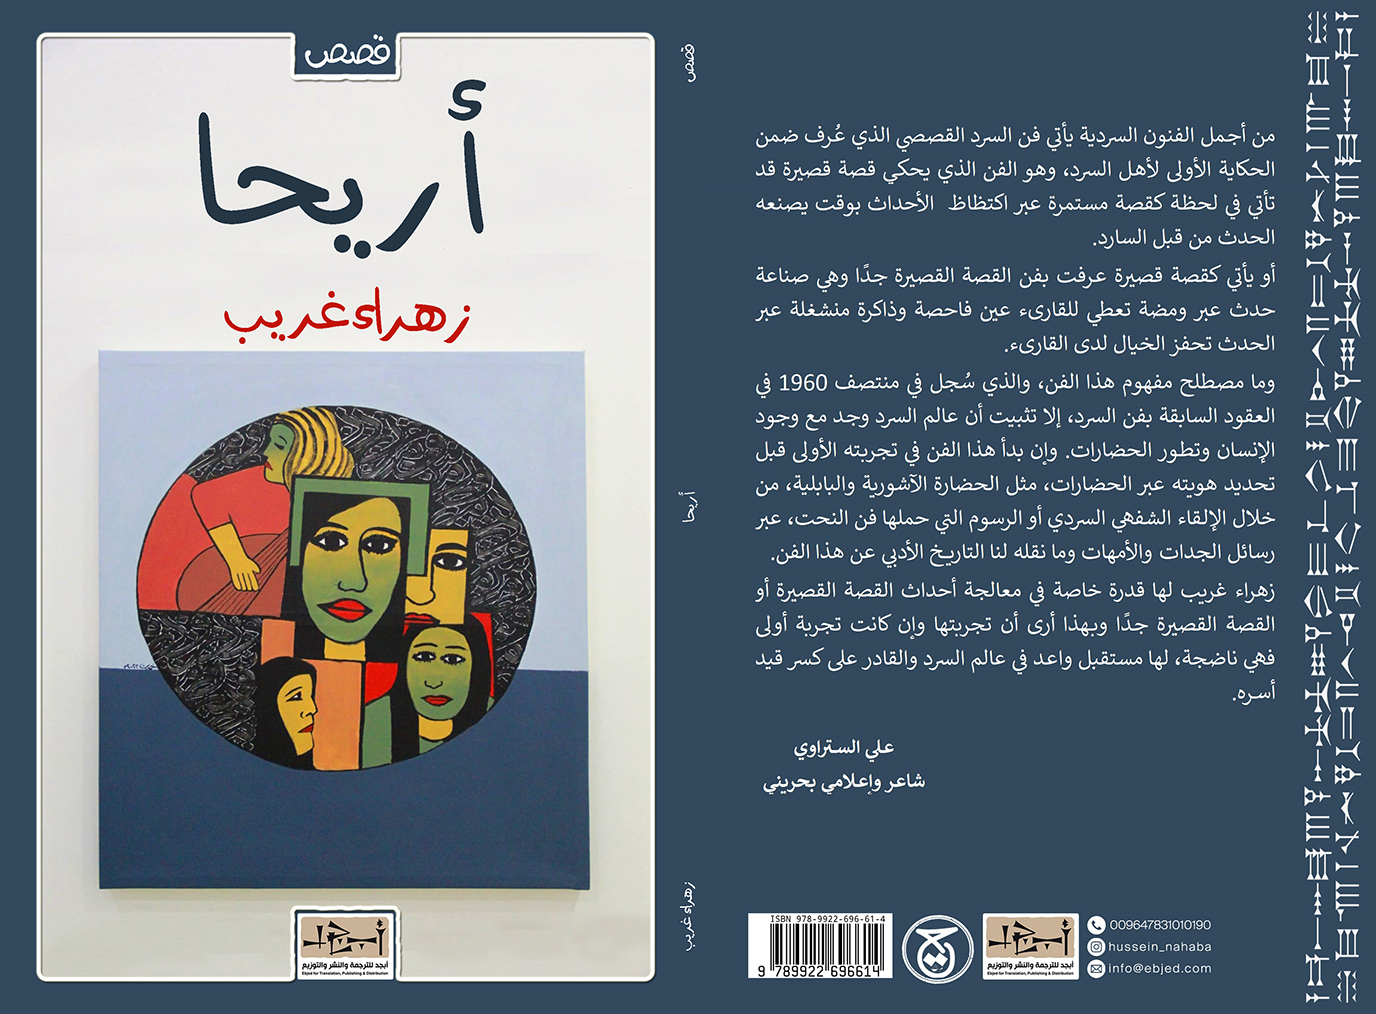 عنوان الكتاب: أريحا تأليف: زهراء غريب التصنيف: مجموعة قصصية